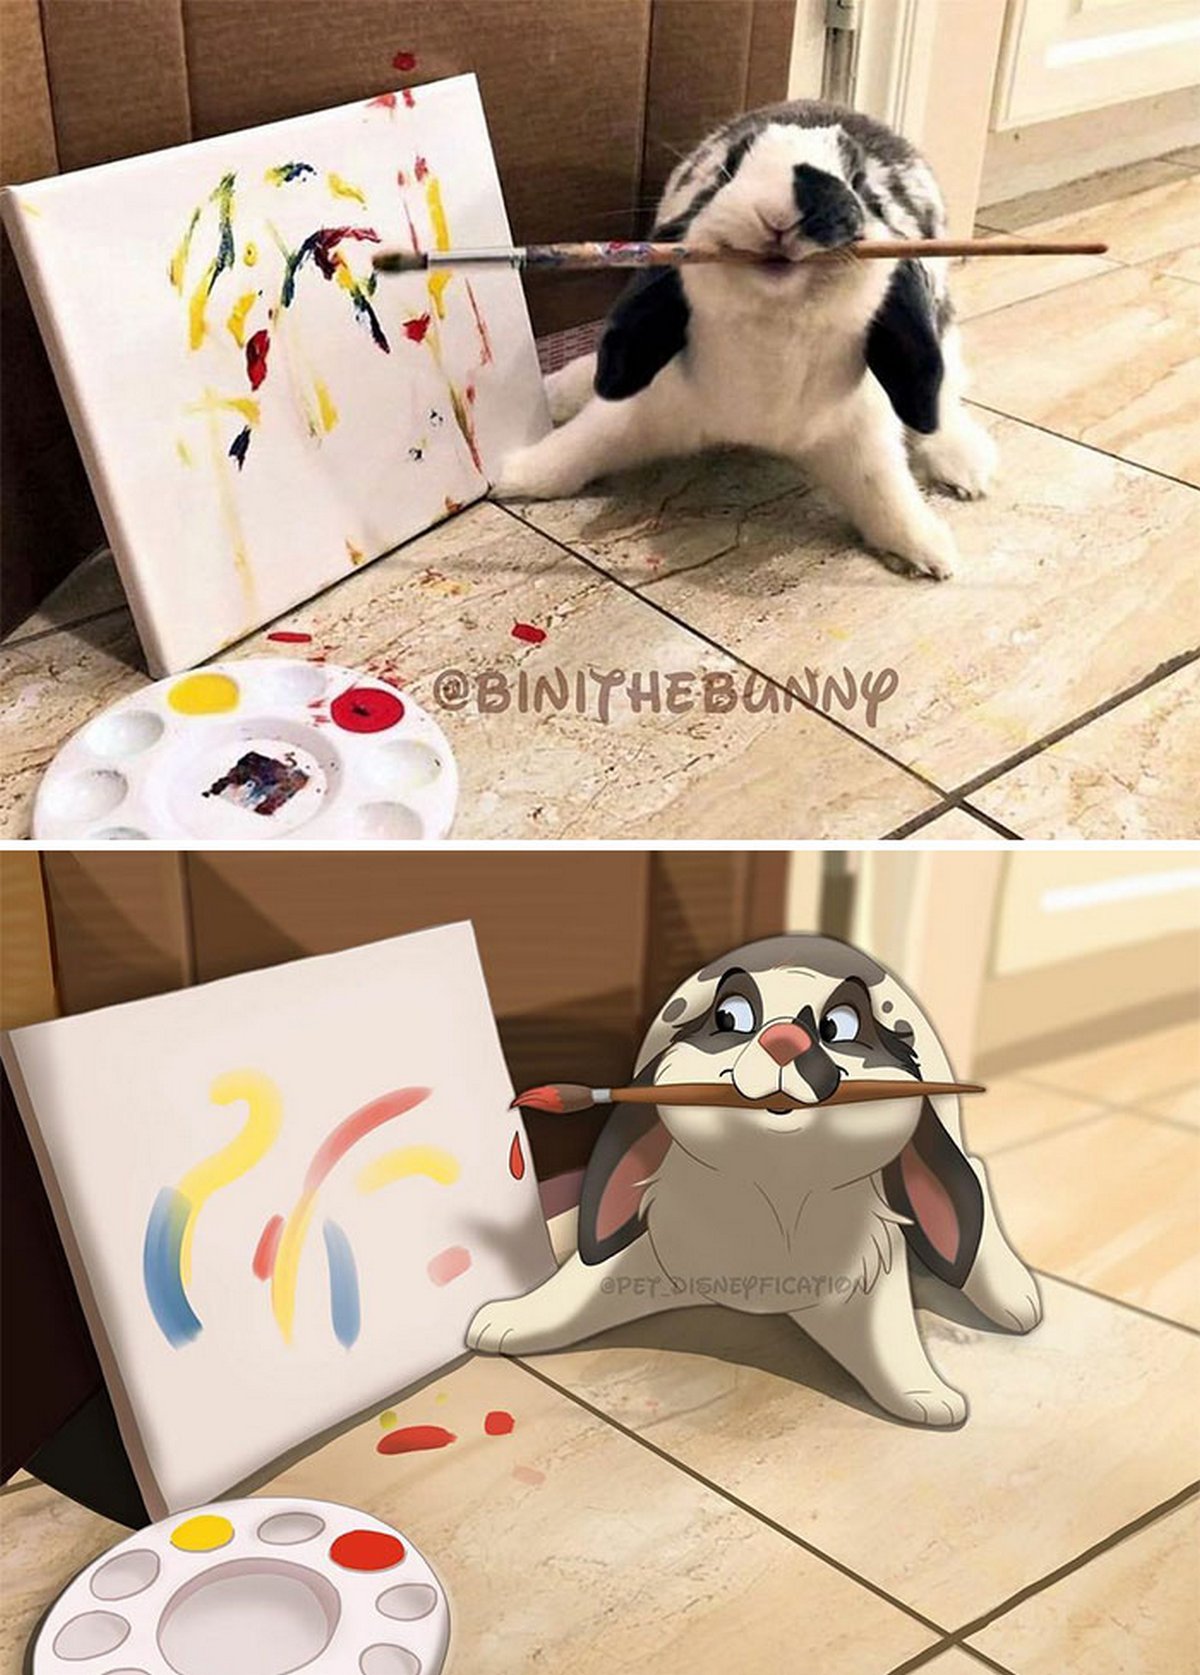 Les gens envoient des photos de leurs animaux à cette artiste et elle les transforme en personnages Disney